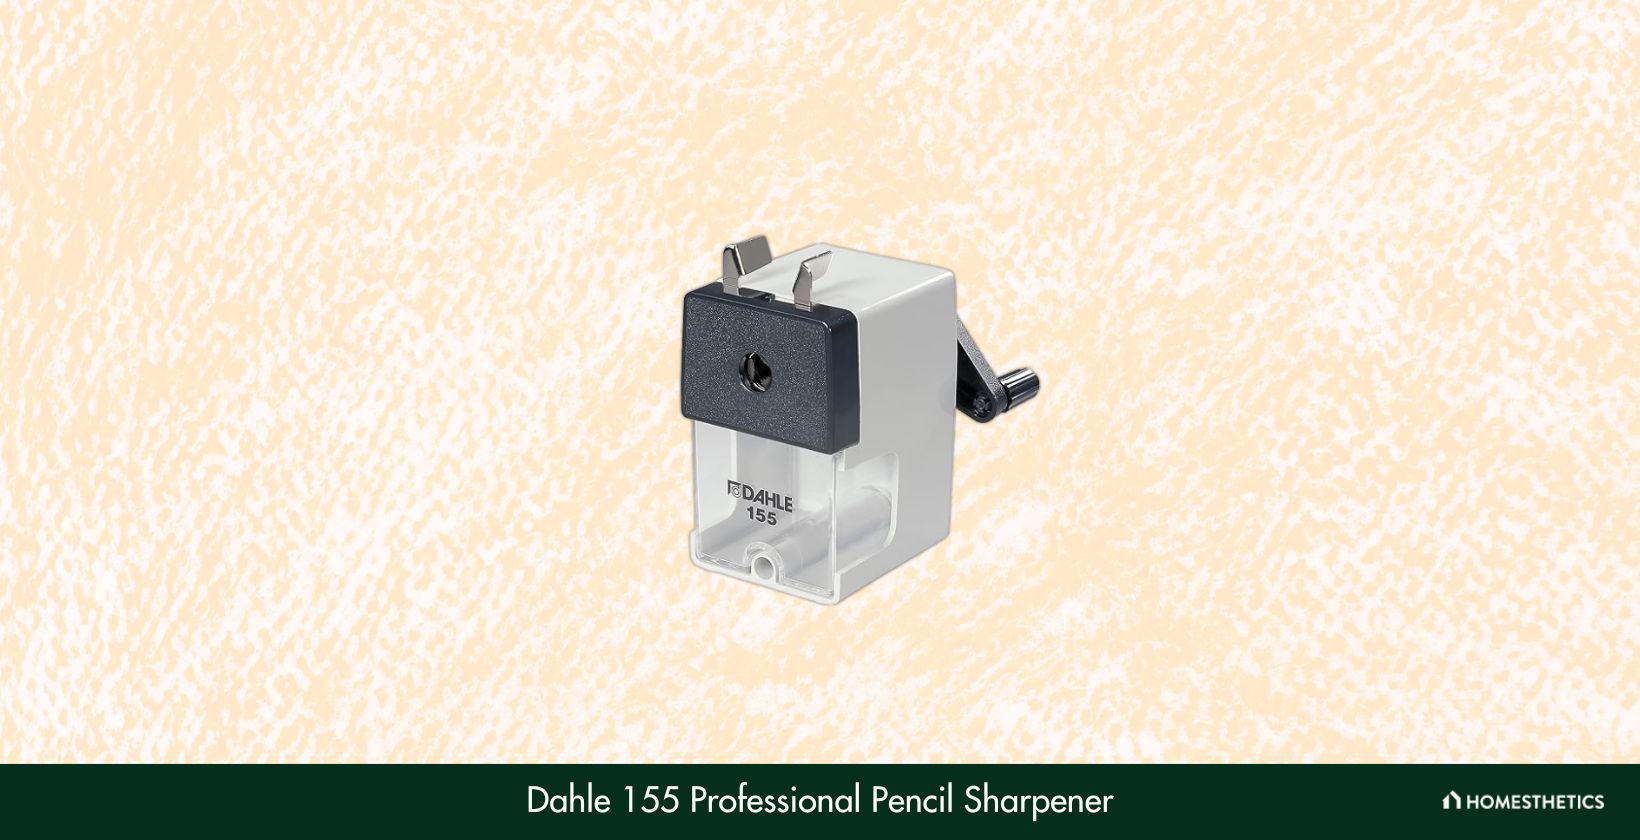 Dahle 155 Professional Pencil Sharpener